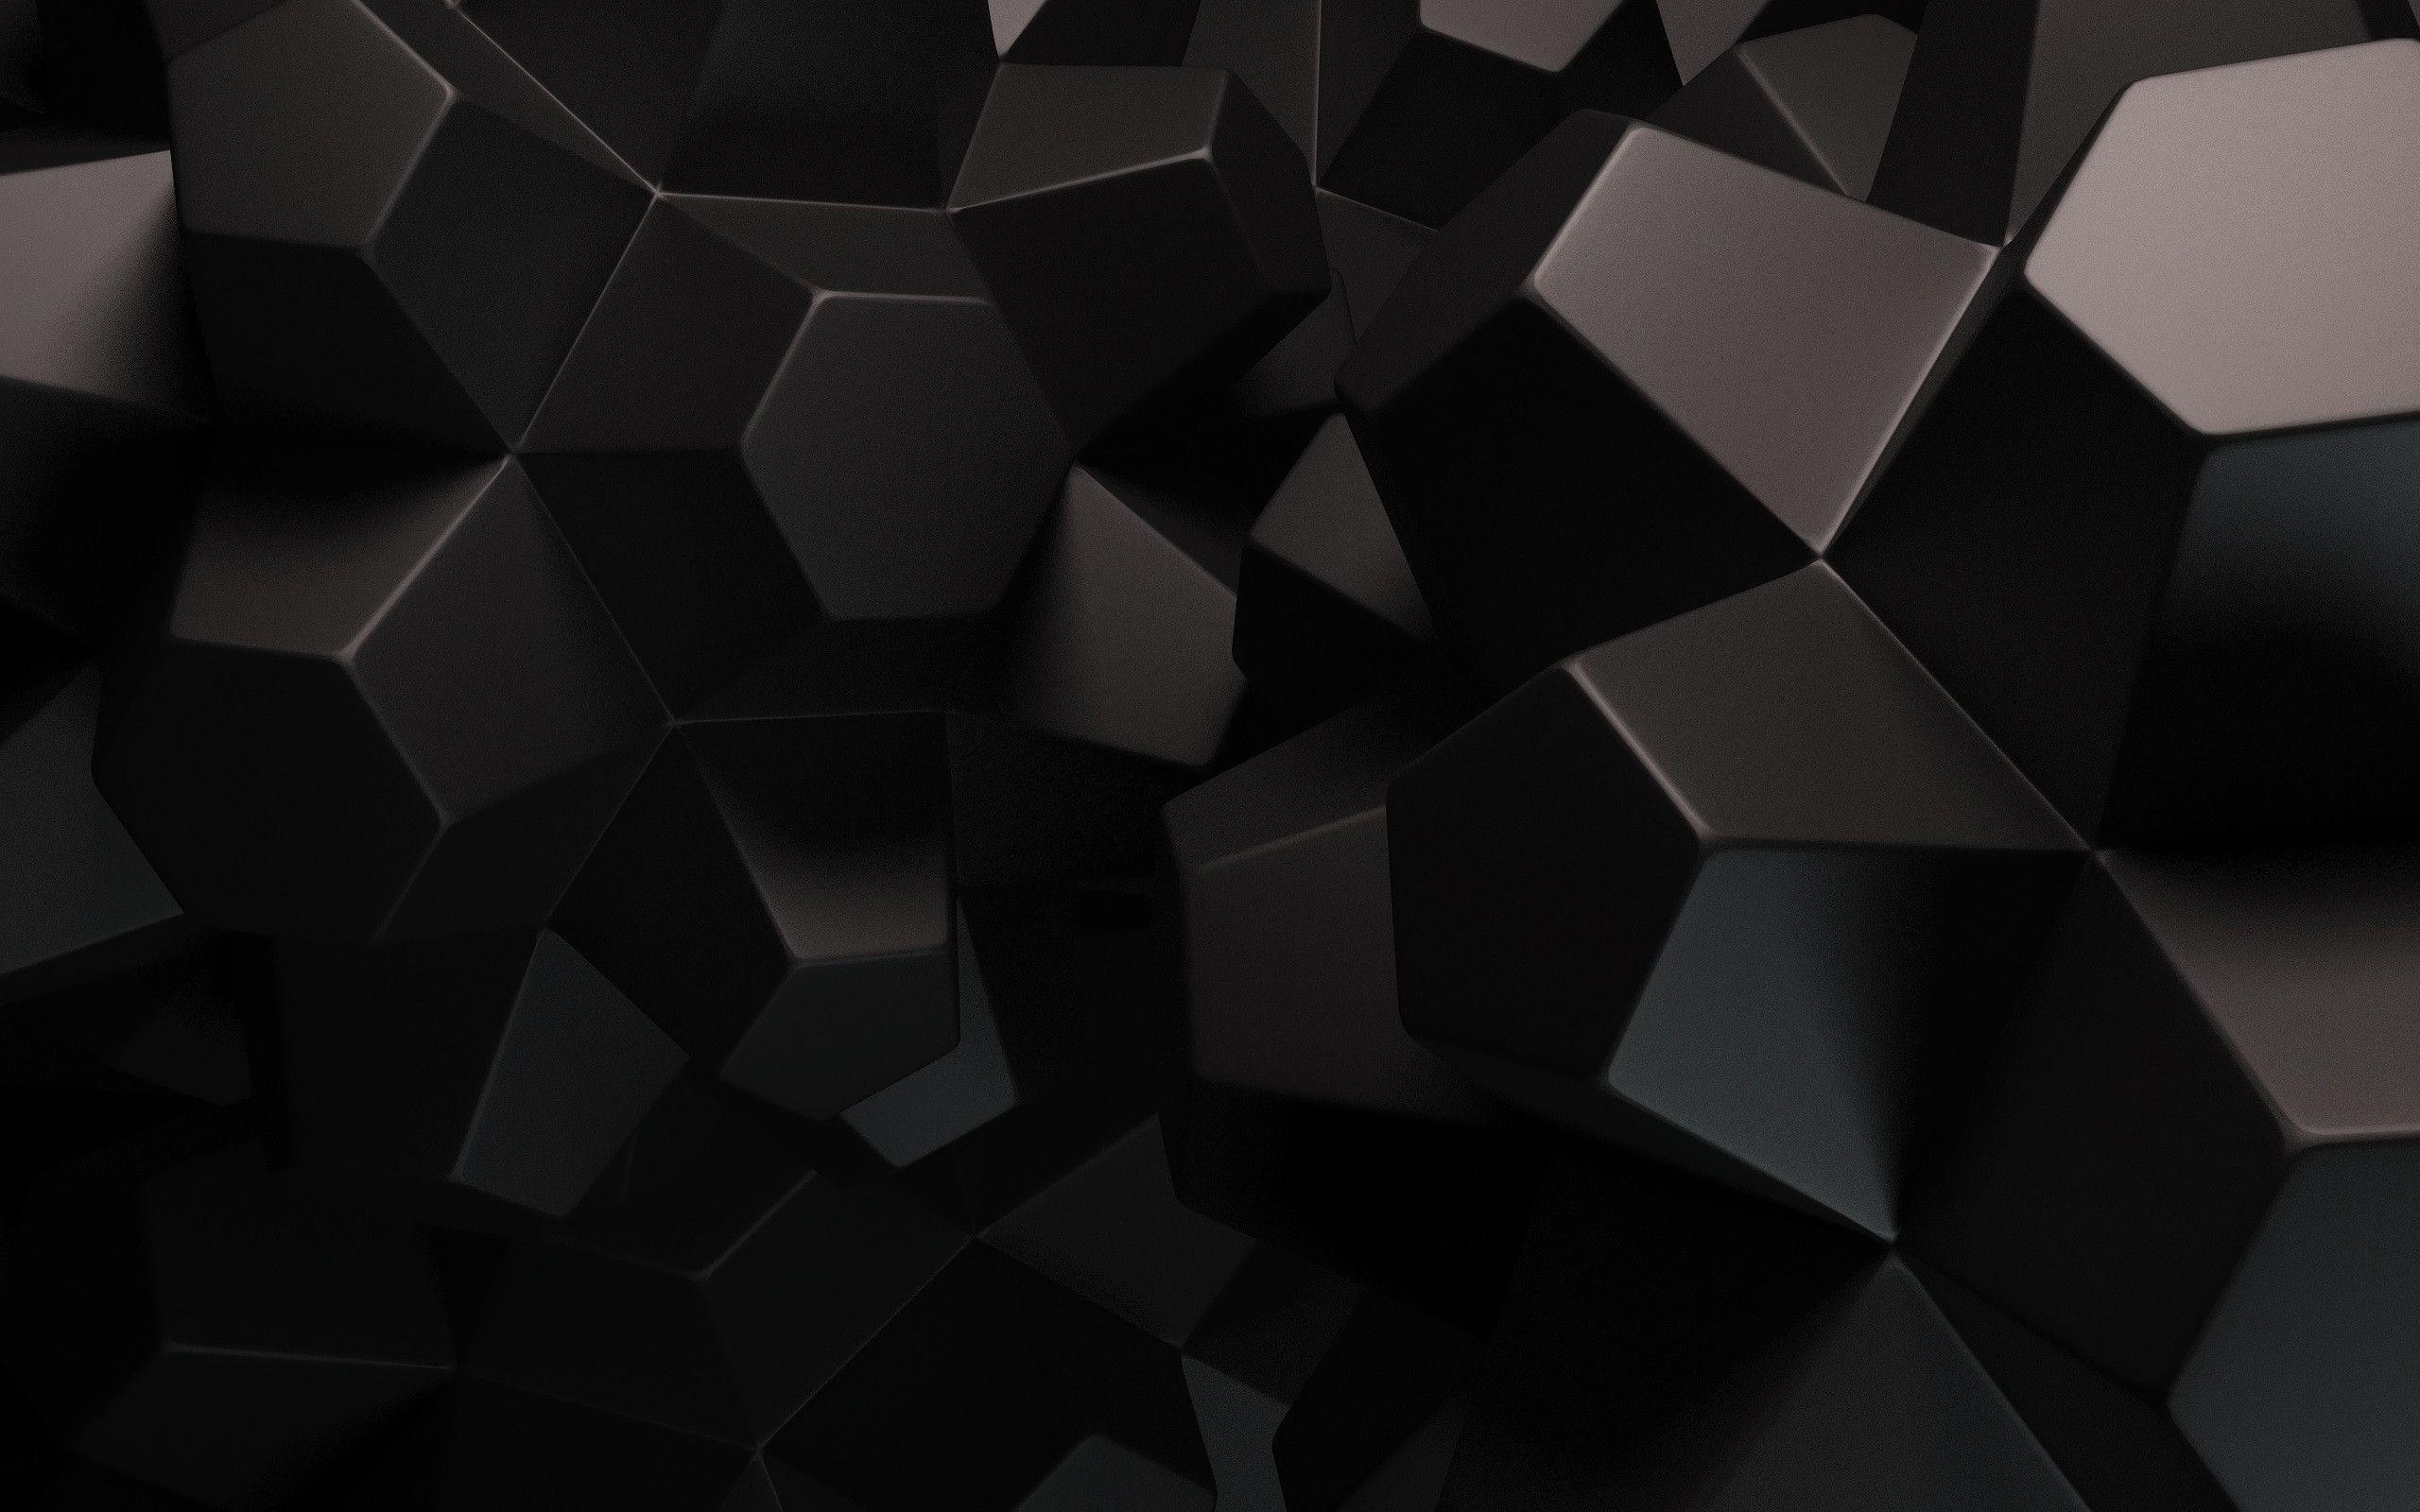 Hình nền đen sẽ mang đến cho thiết bị của bạn một vẻ đẹp cổ điển và sang trọng. Hãy truy cập Wallpaper Cave để tìm kiếm những hình nền đen đang thịnh hành trên thế giới và đem đến cho thiết bị của bạn một cái nhìn mới mẻ và độc đáo.